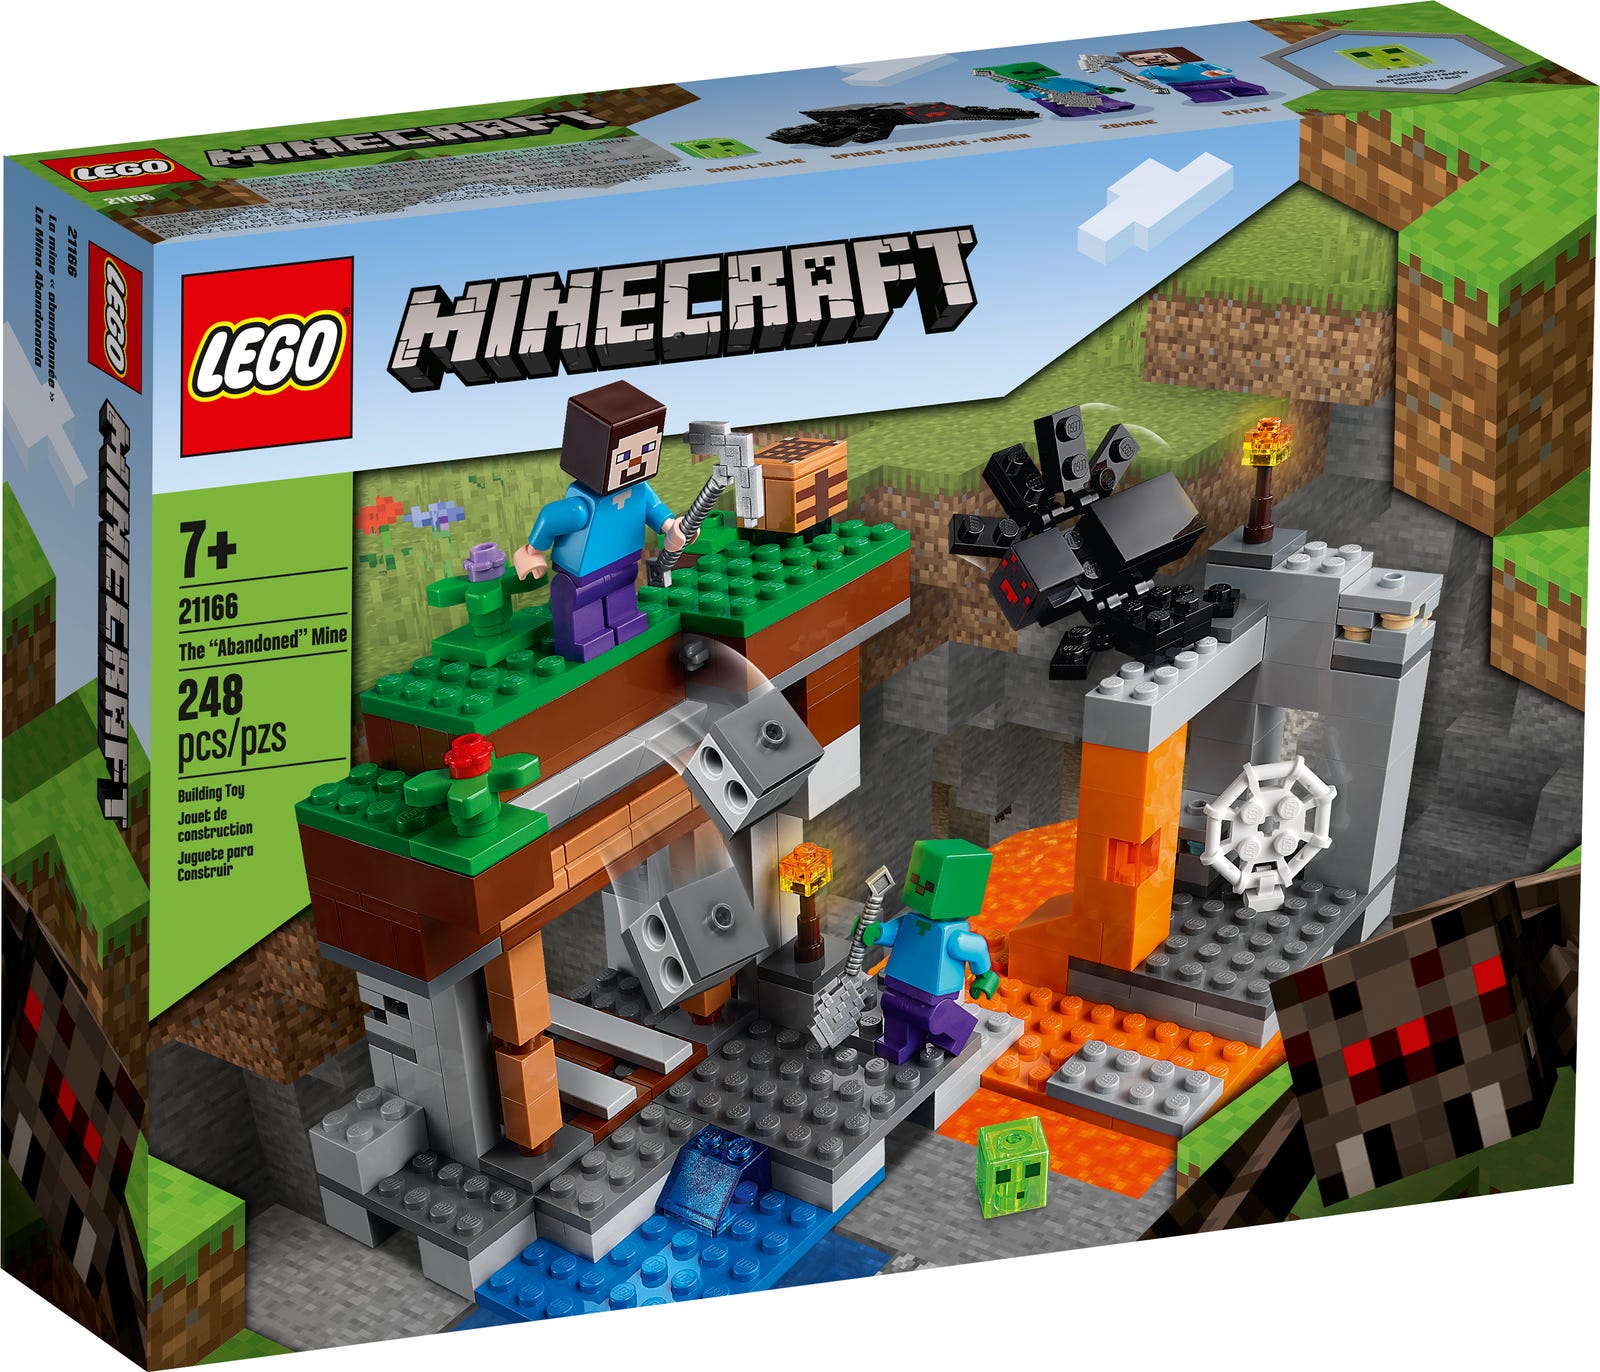 LEGO 21166 MINECRAFT - THE ABANDONED MINE